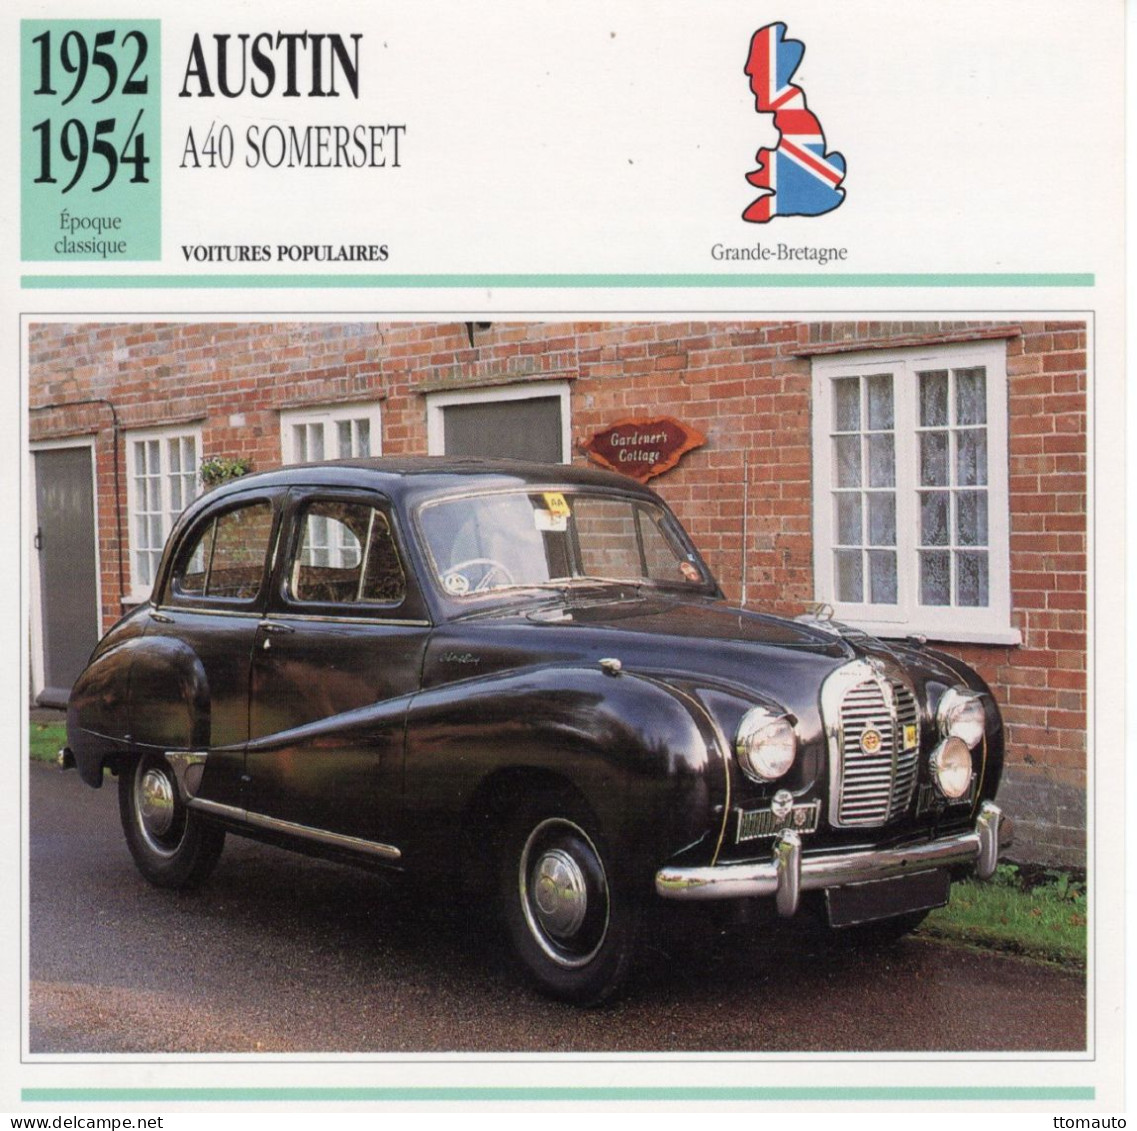 Austin A40 Somerset -  1953  - Voiture Populaire -  Fiche Technique Automobile (GB) - Coches